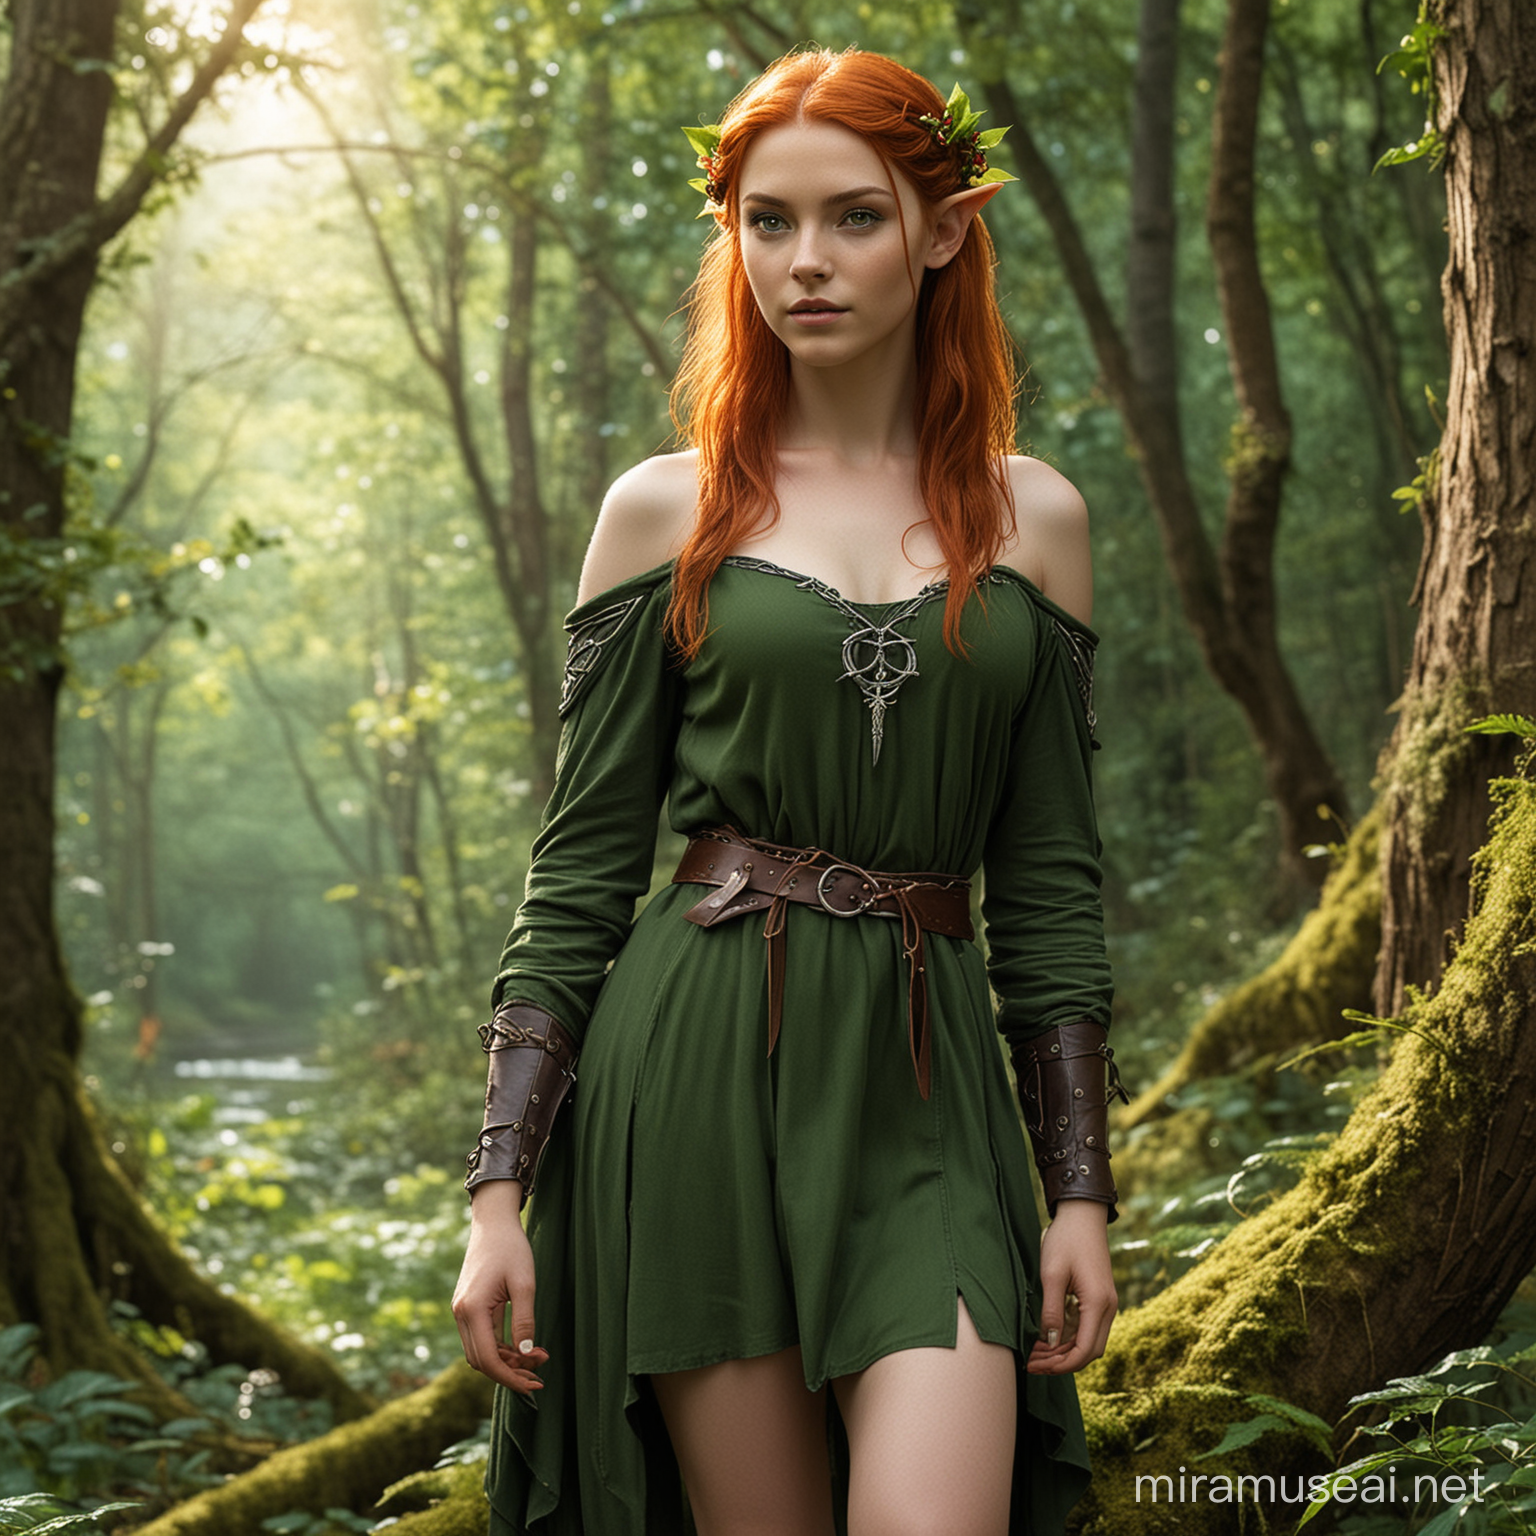 Enchanting Wood Elf Druid amidst Natural Splendor